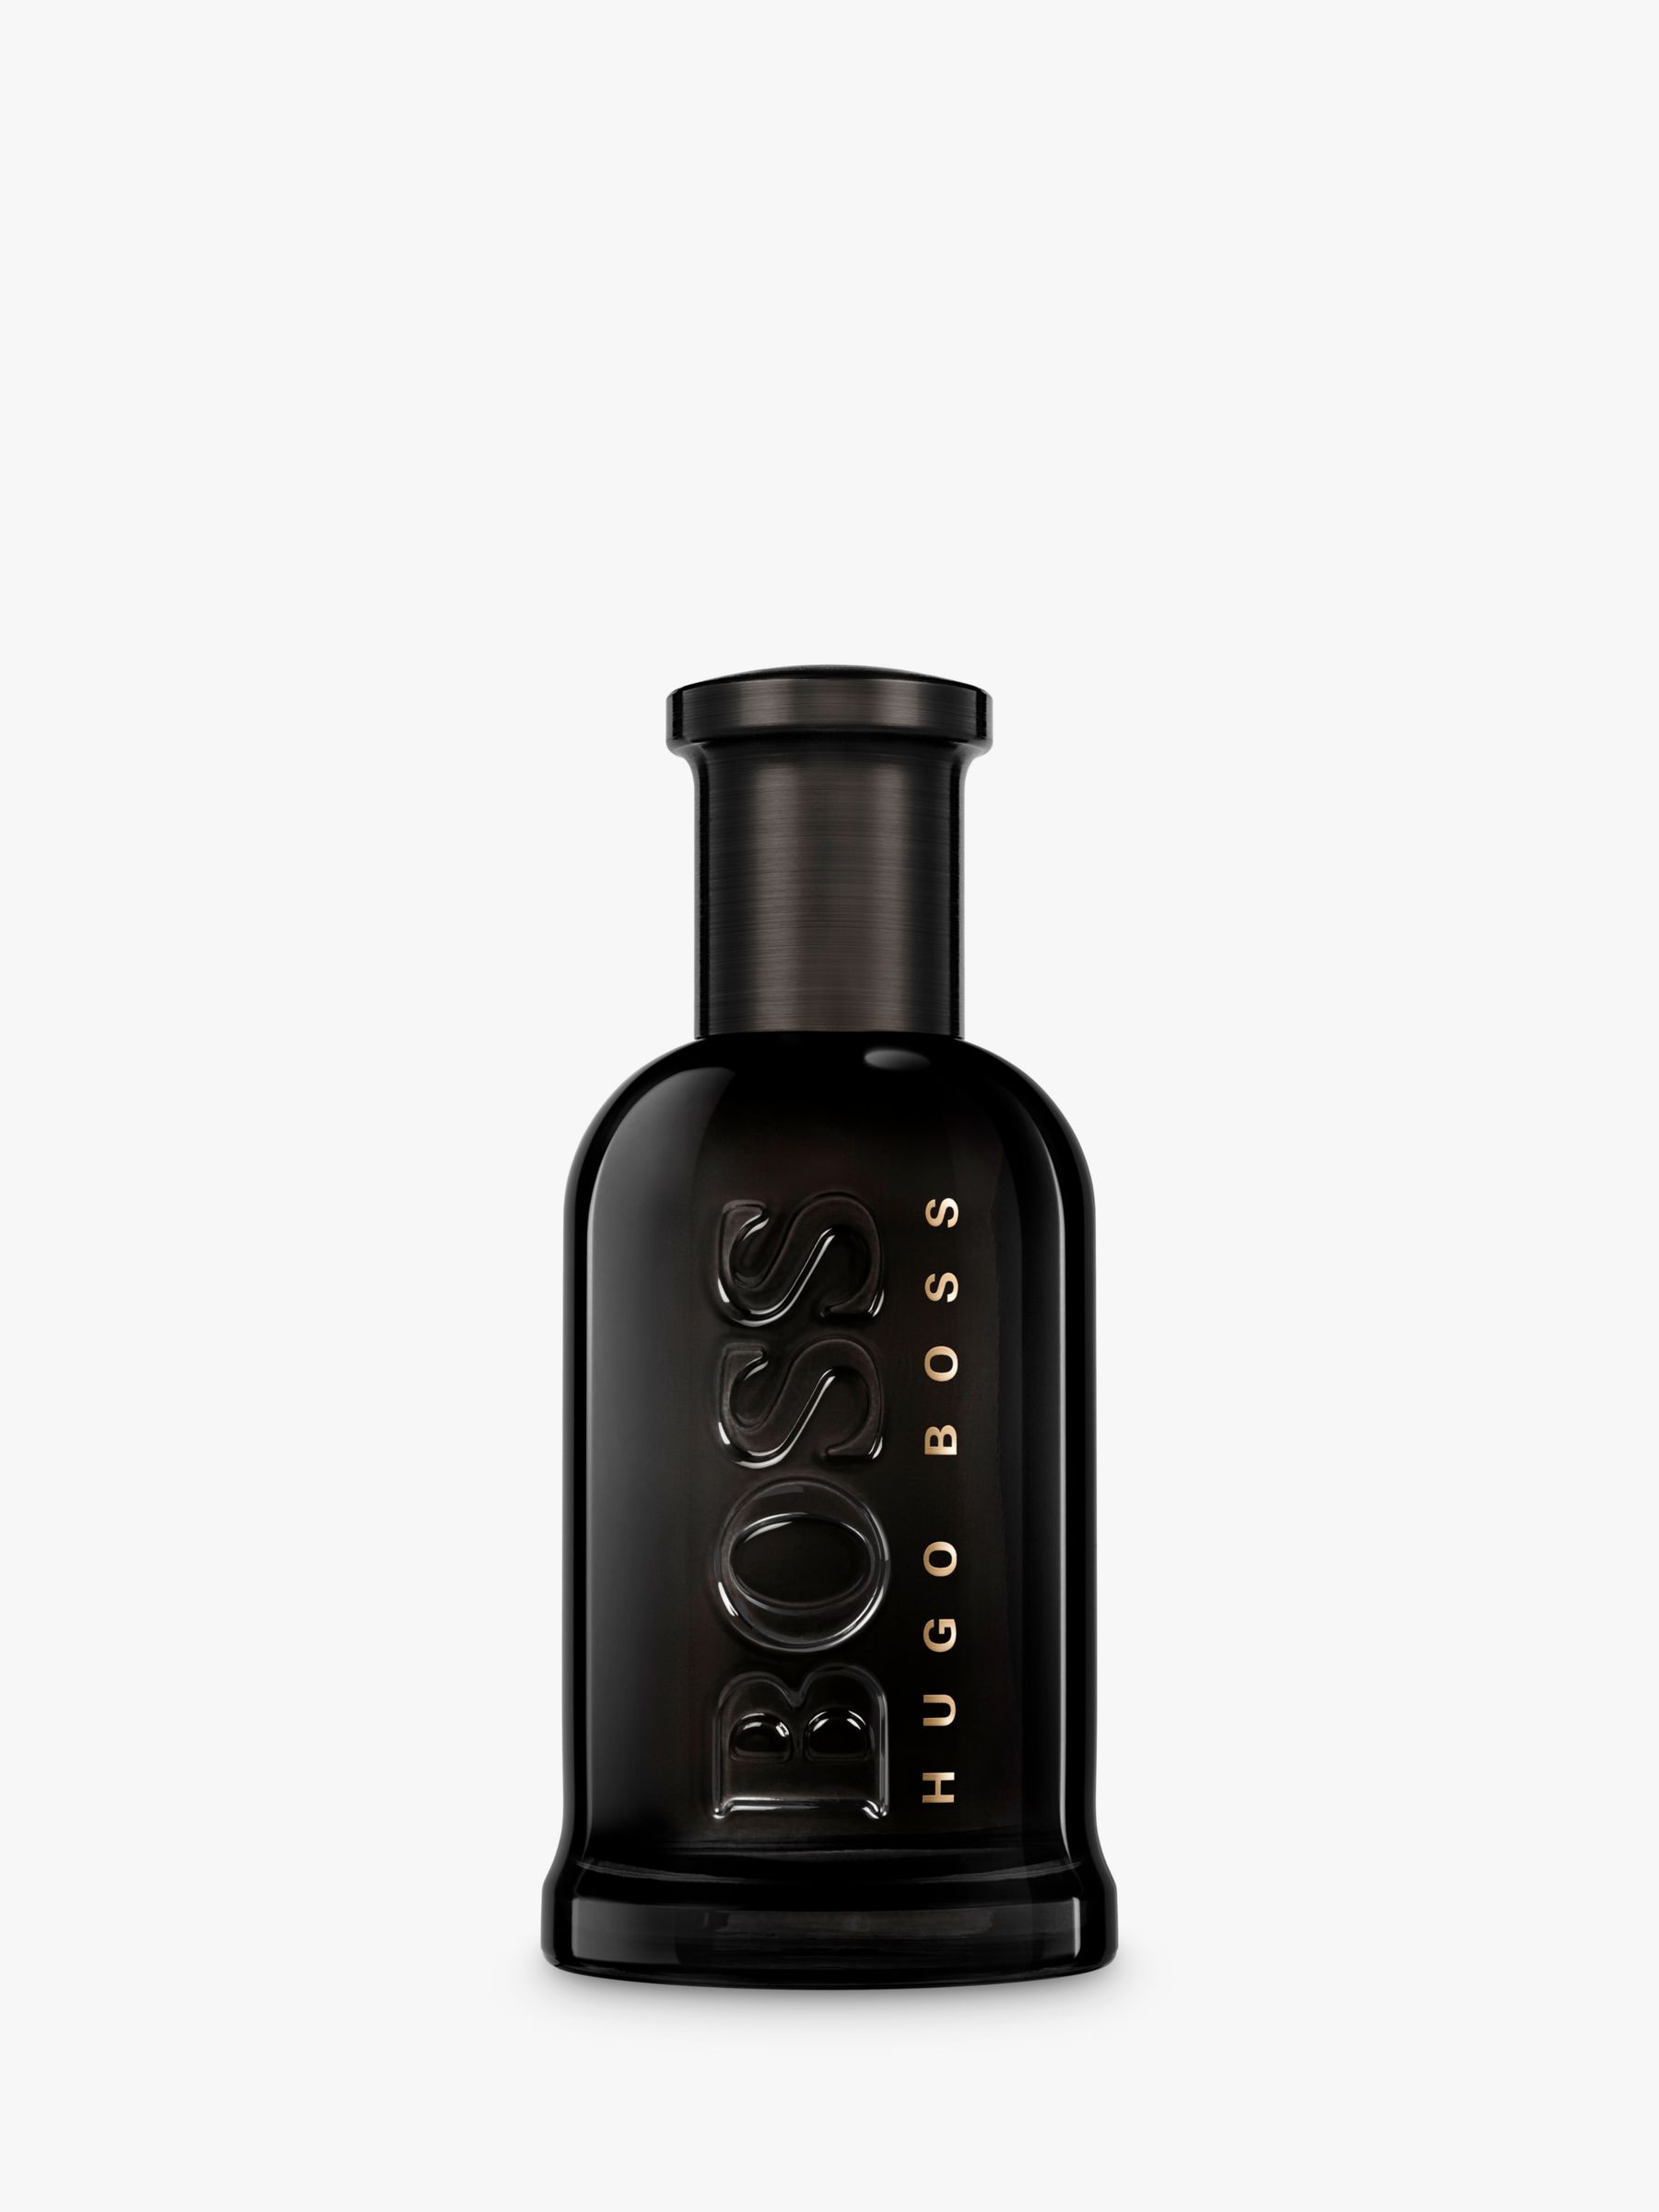 HUGO BOSS BOSS Bottled Parfum, 50ml 1